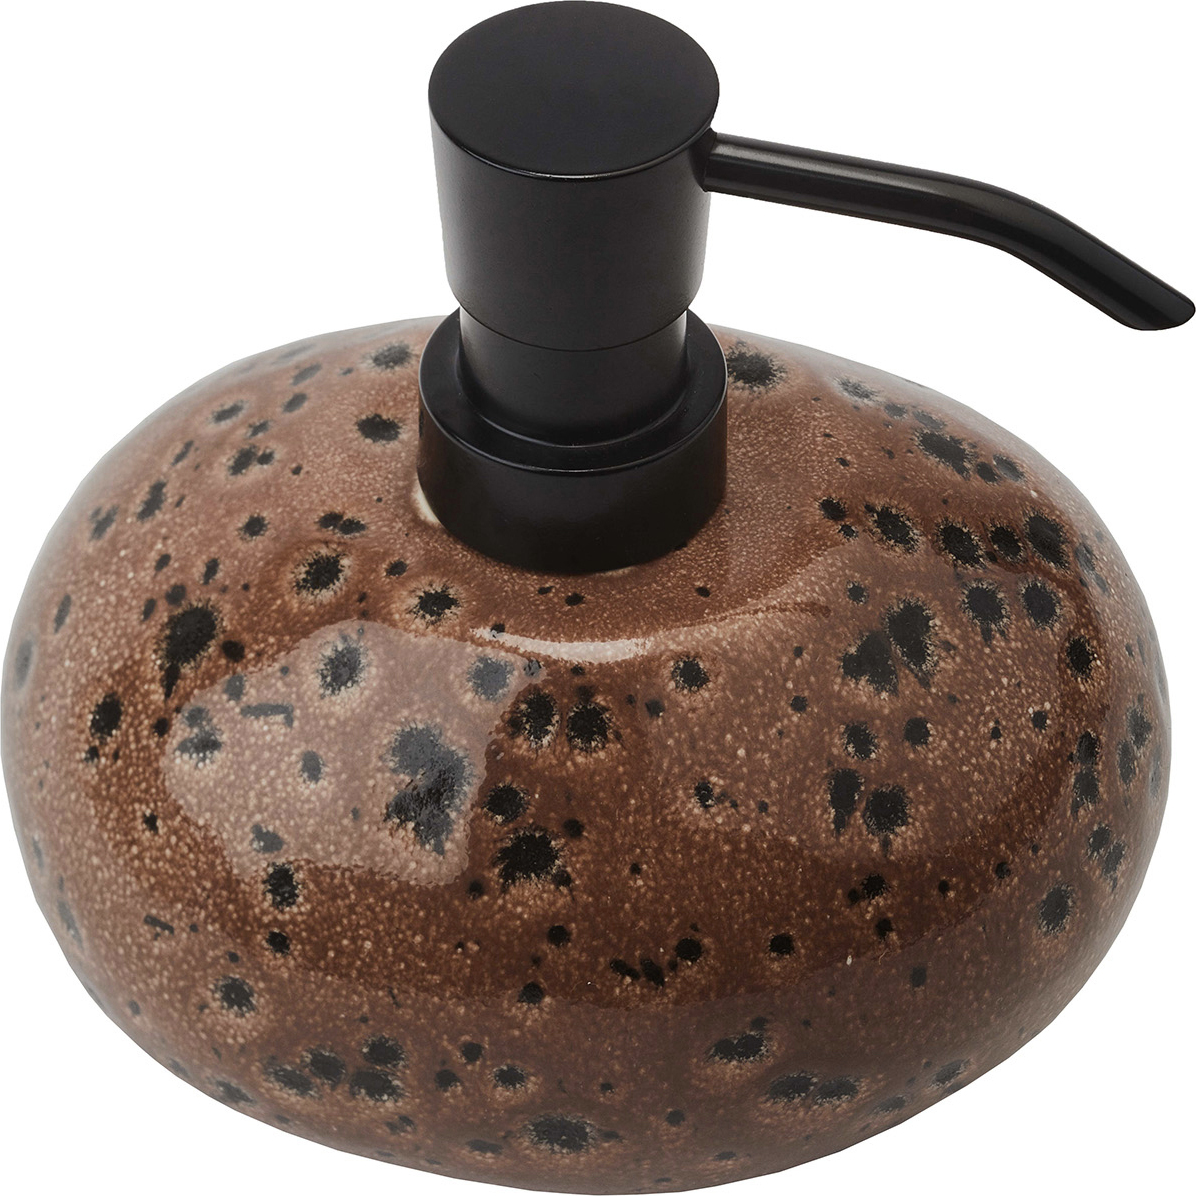 Terracotta Mojave Soap Dispenser